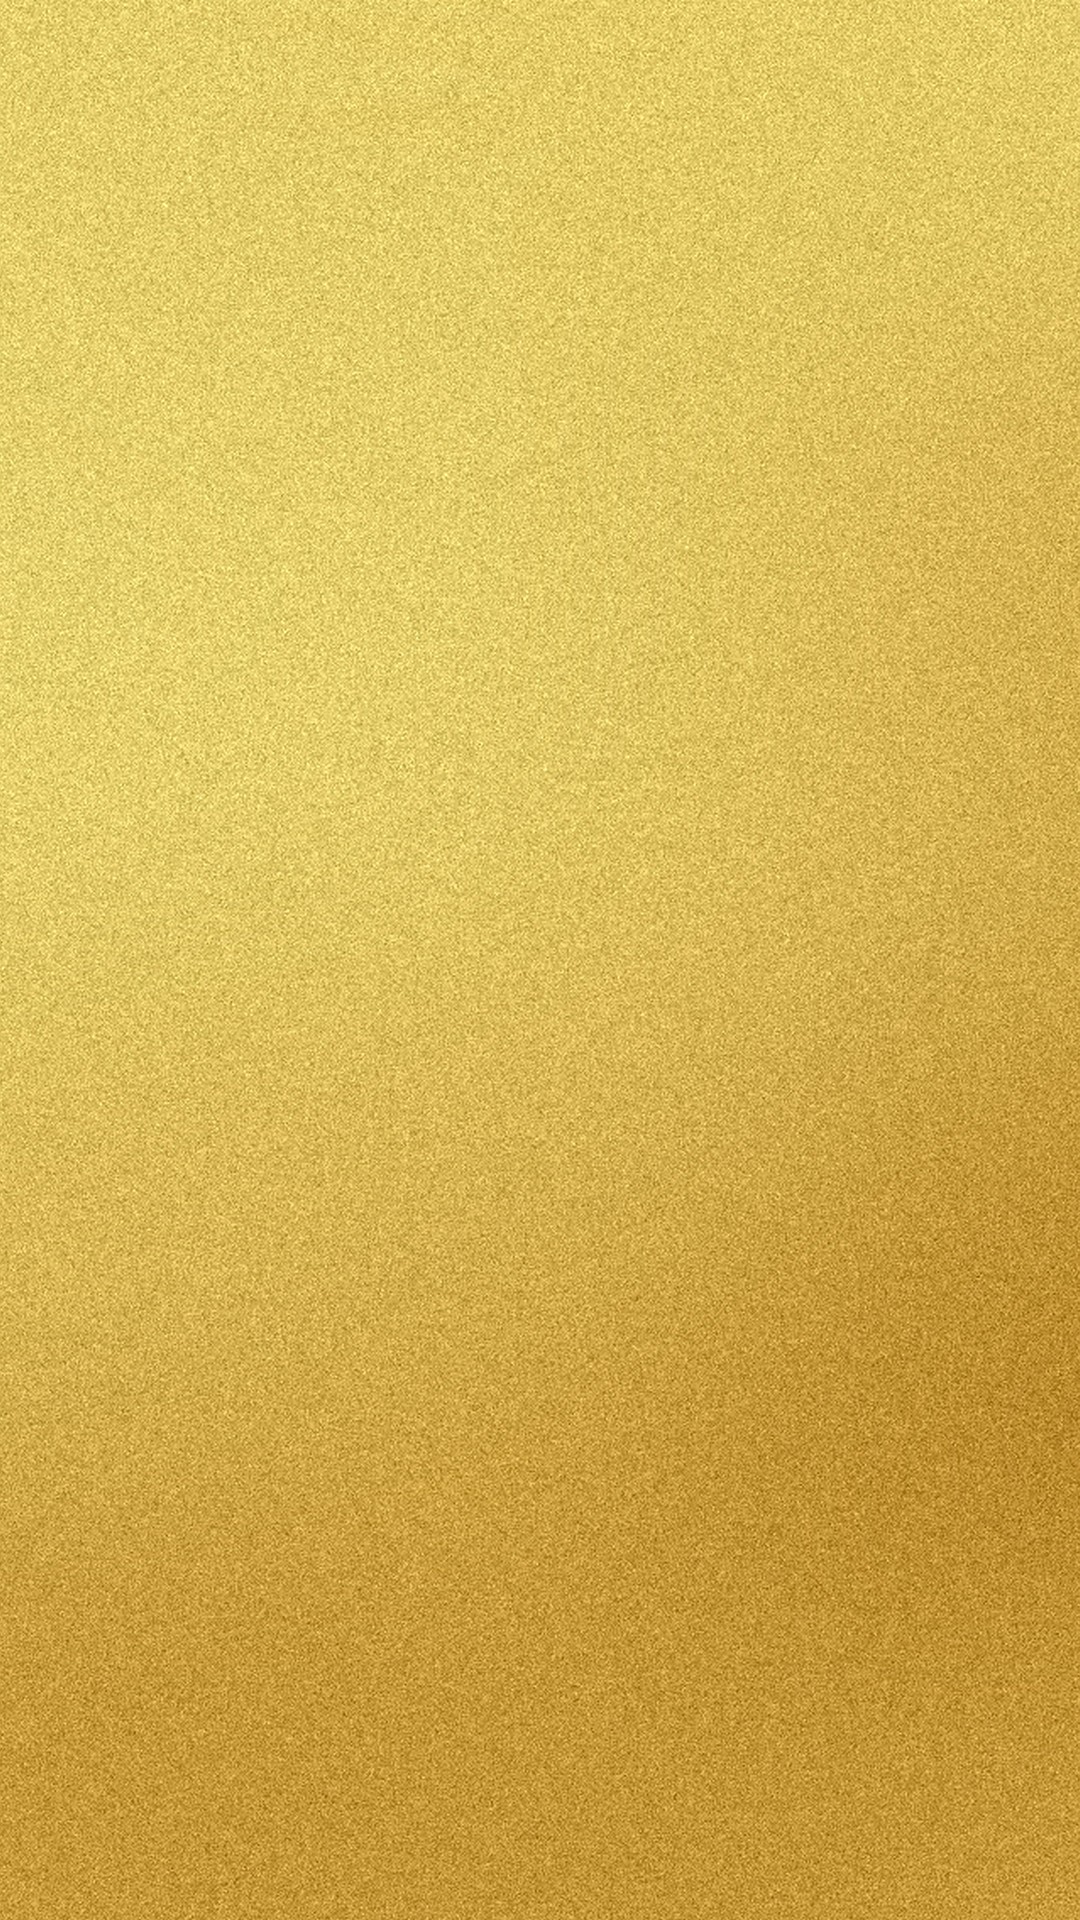 iphone 5s gold wallpaper,gelb,beige